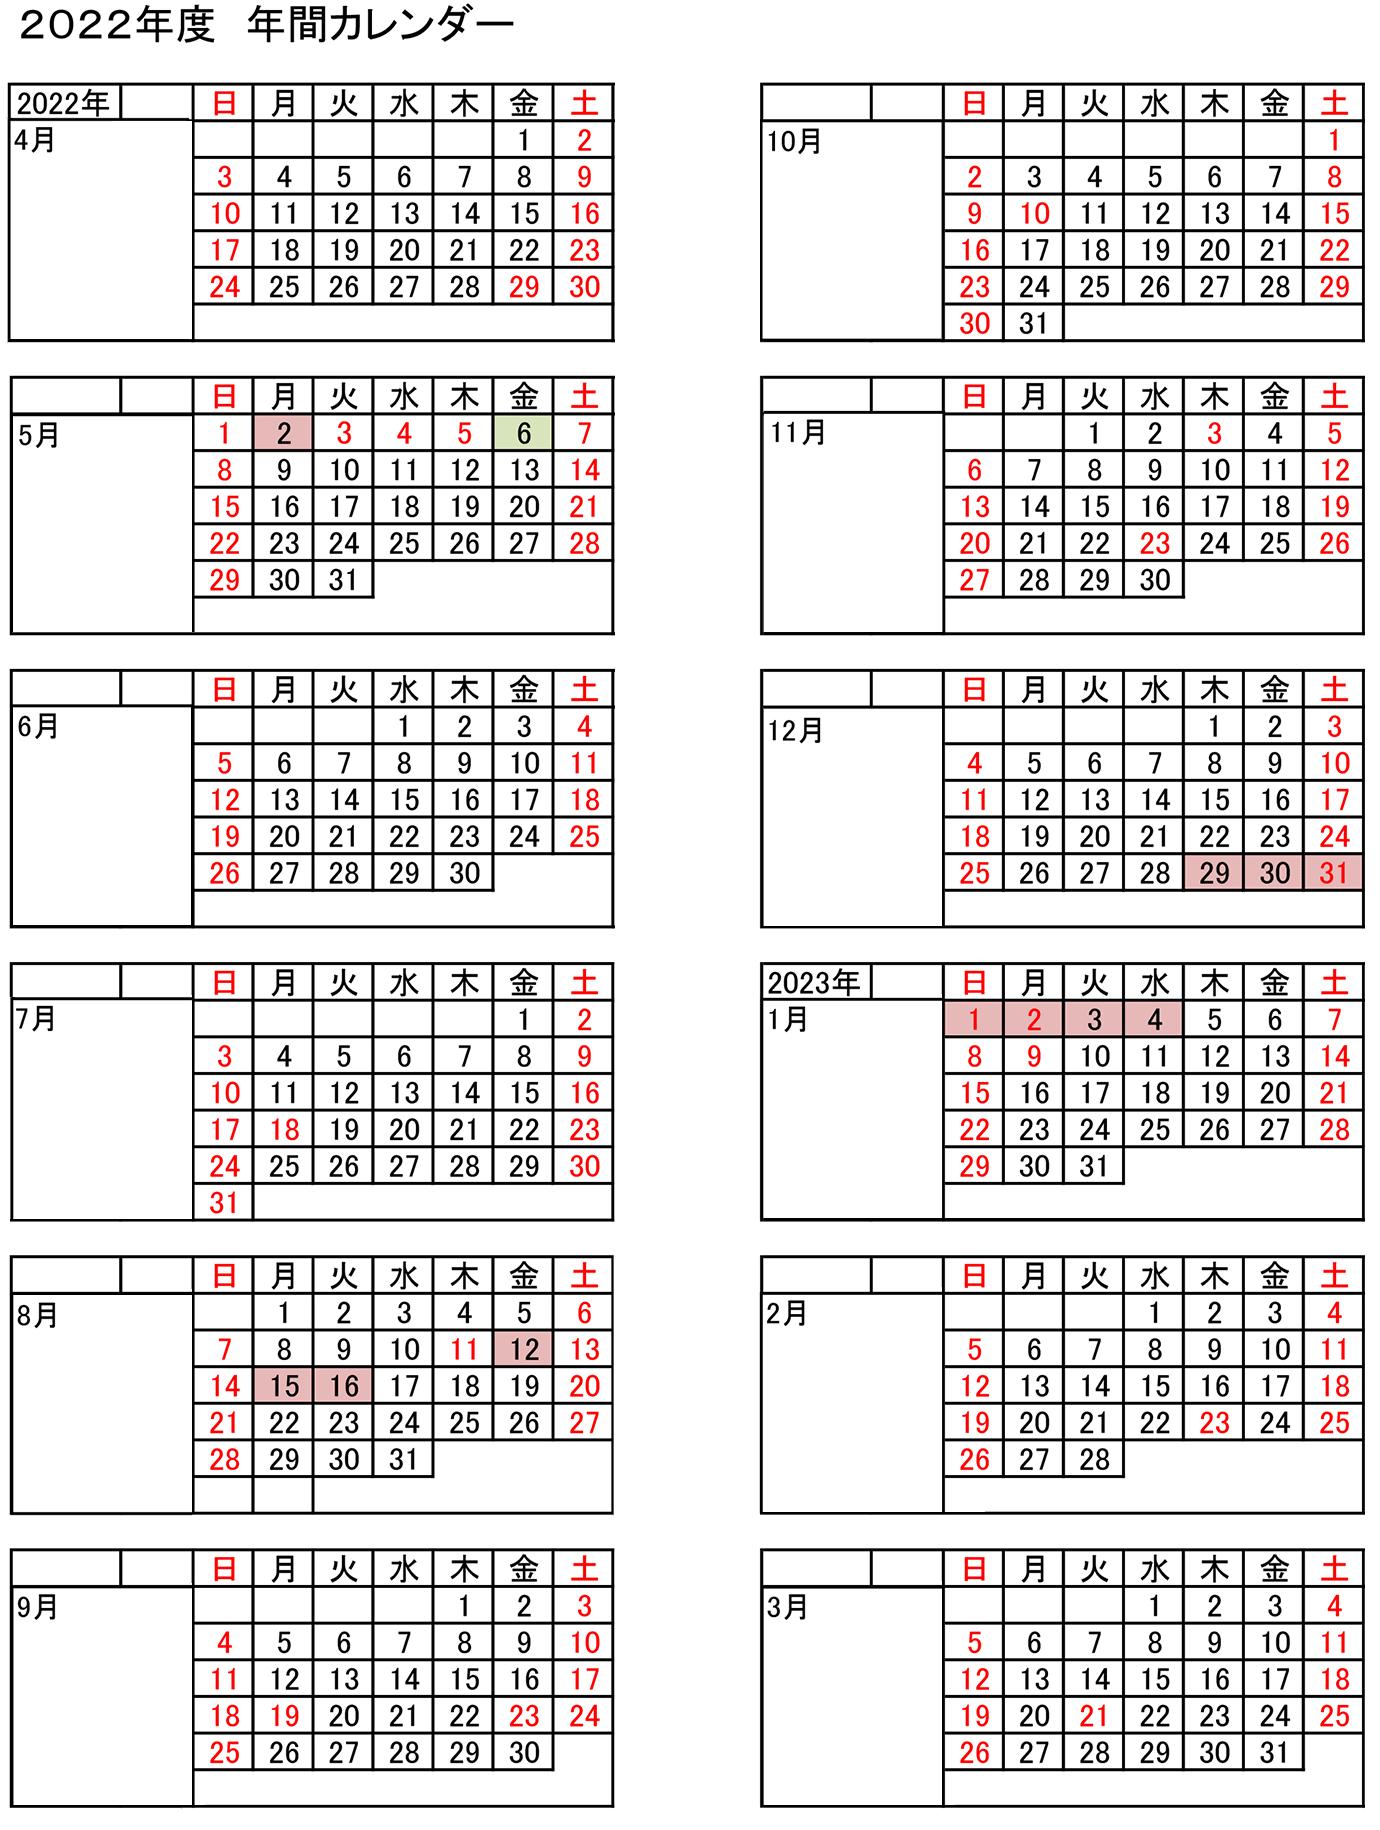 2022年度（令和4年度）年間カレンダー